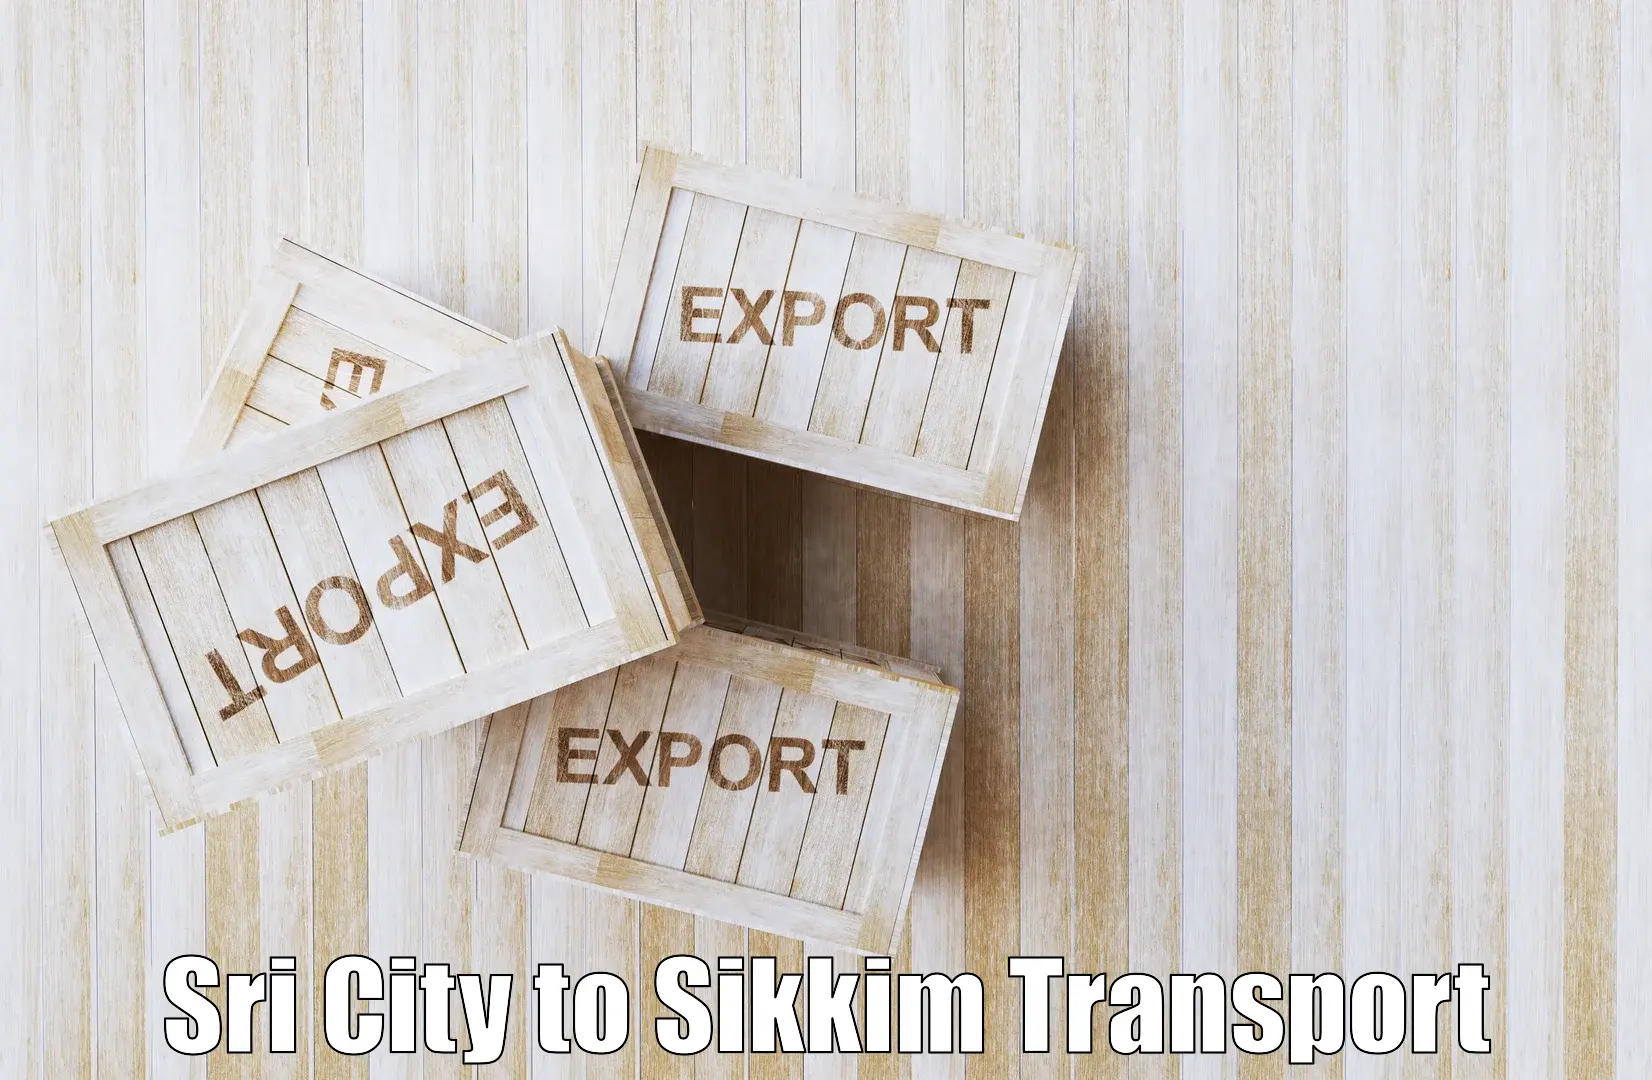 Nearest transport service Sri City to Gangtok